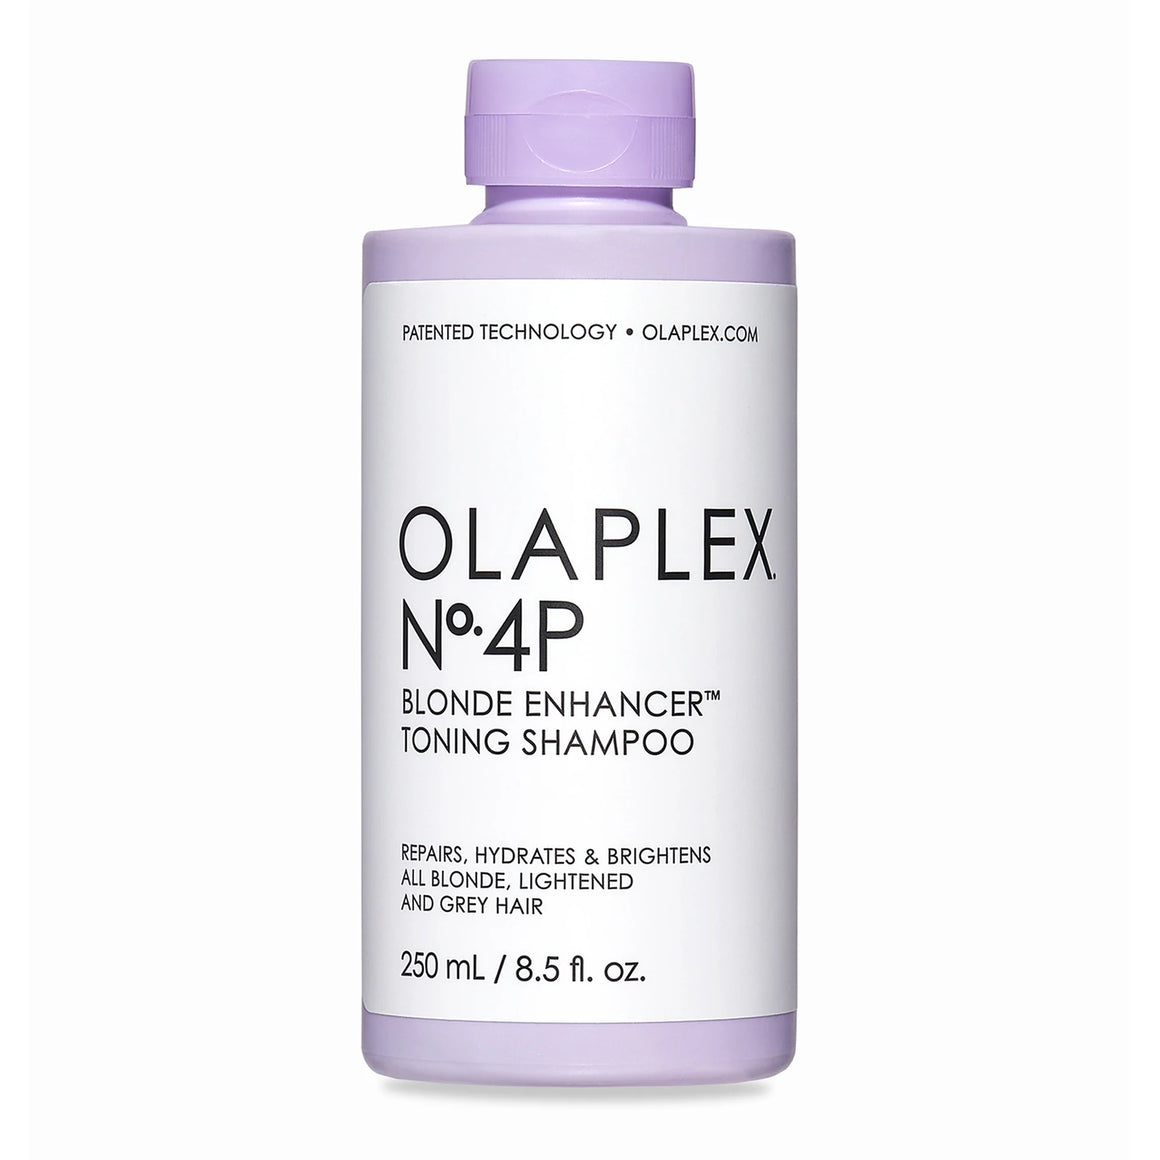 Olaplex No. 4P Blonde Enhancer